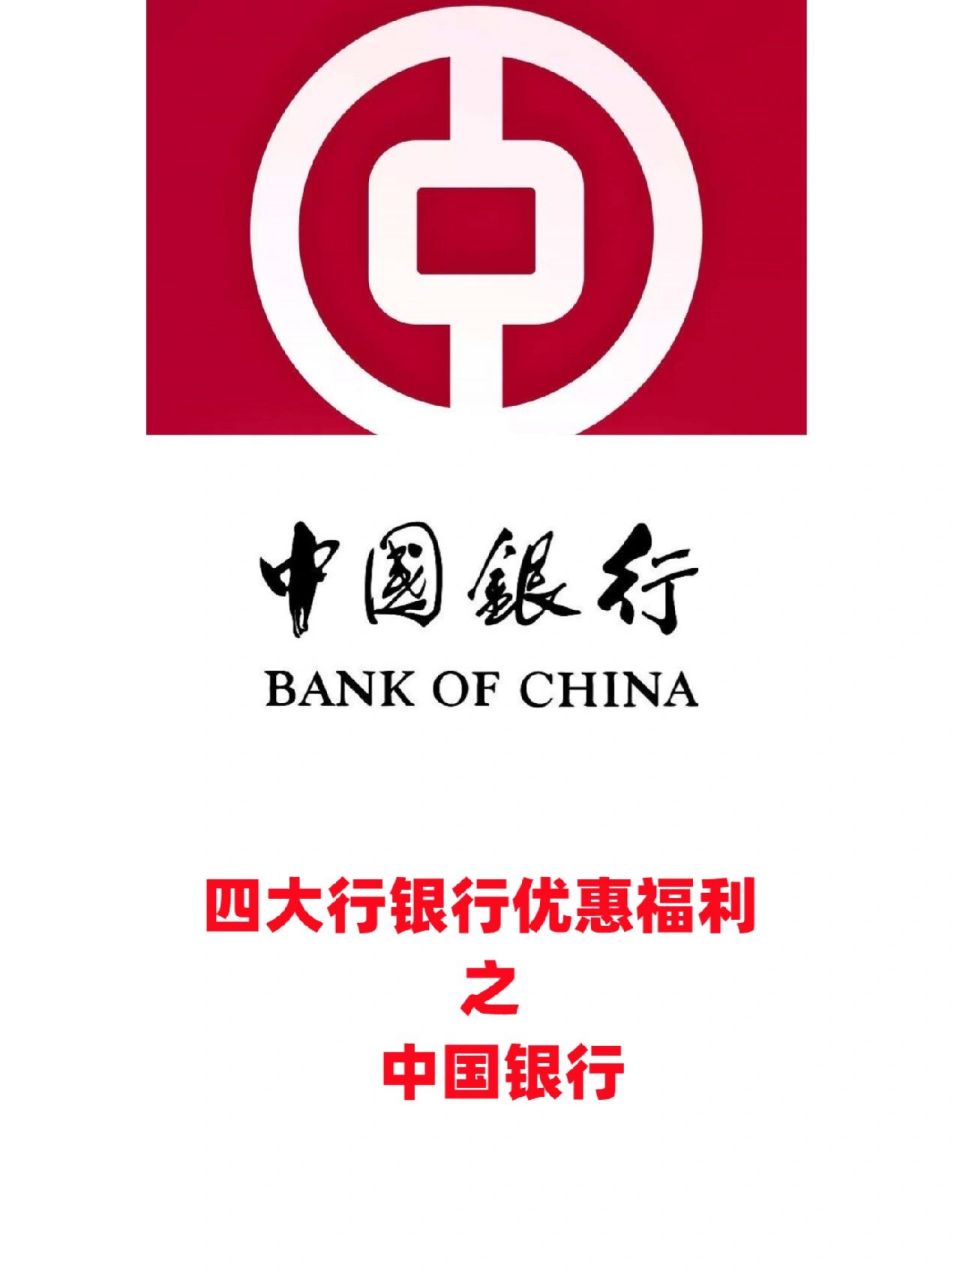 四大行银行优惠之中国银行 今天想和大分享一下四大行中的中国银行的